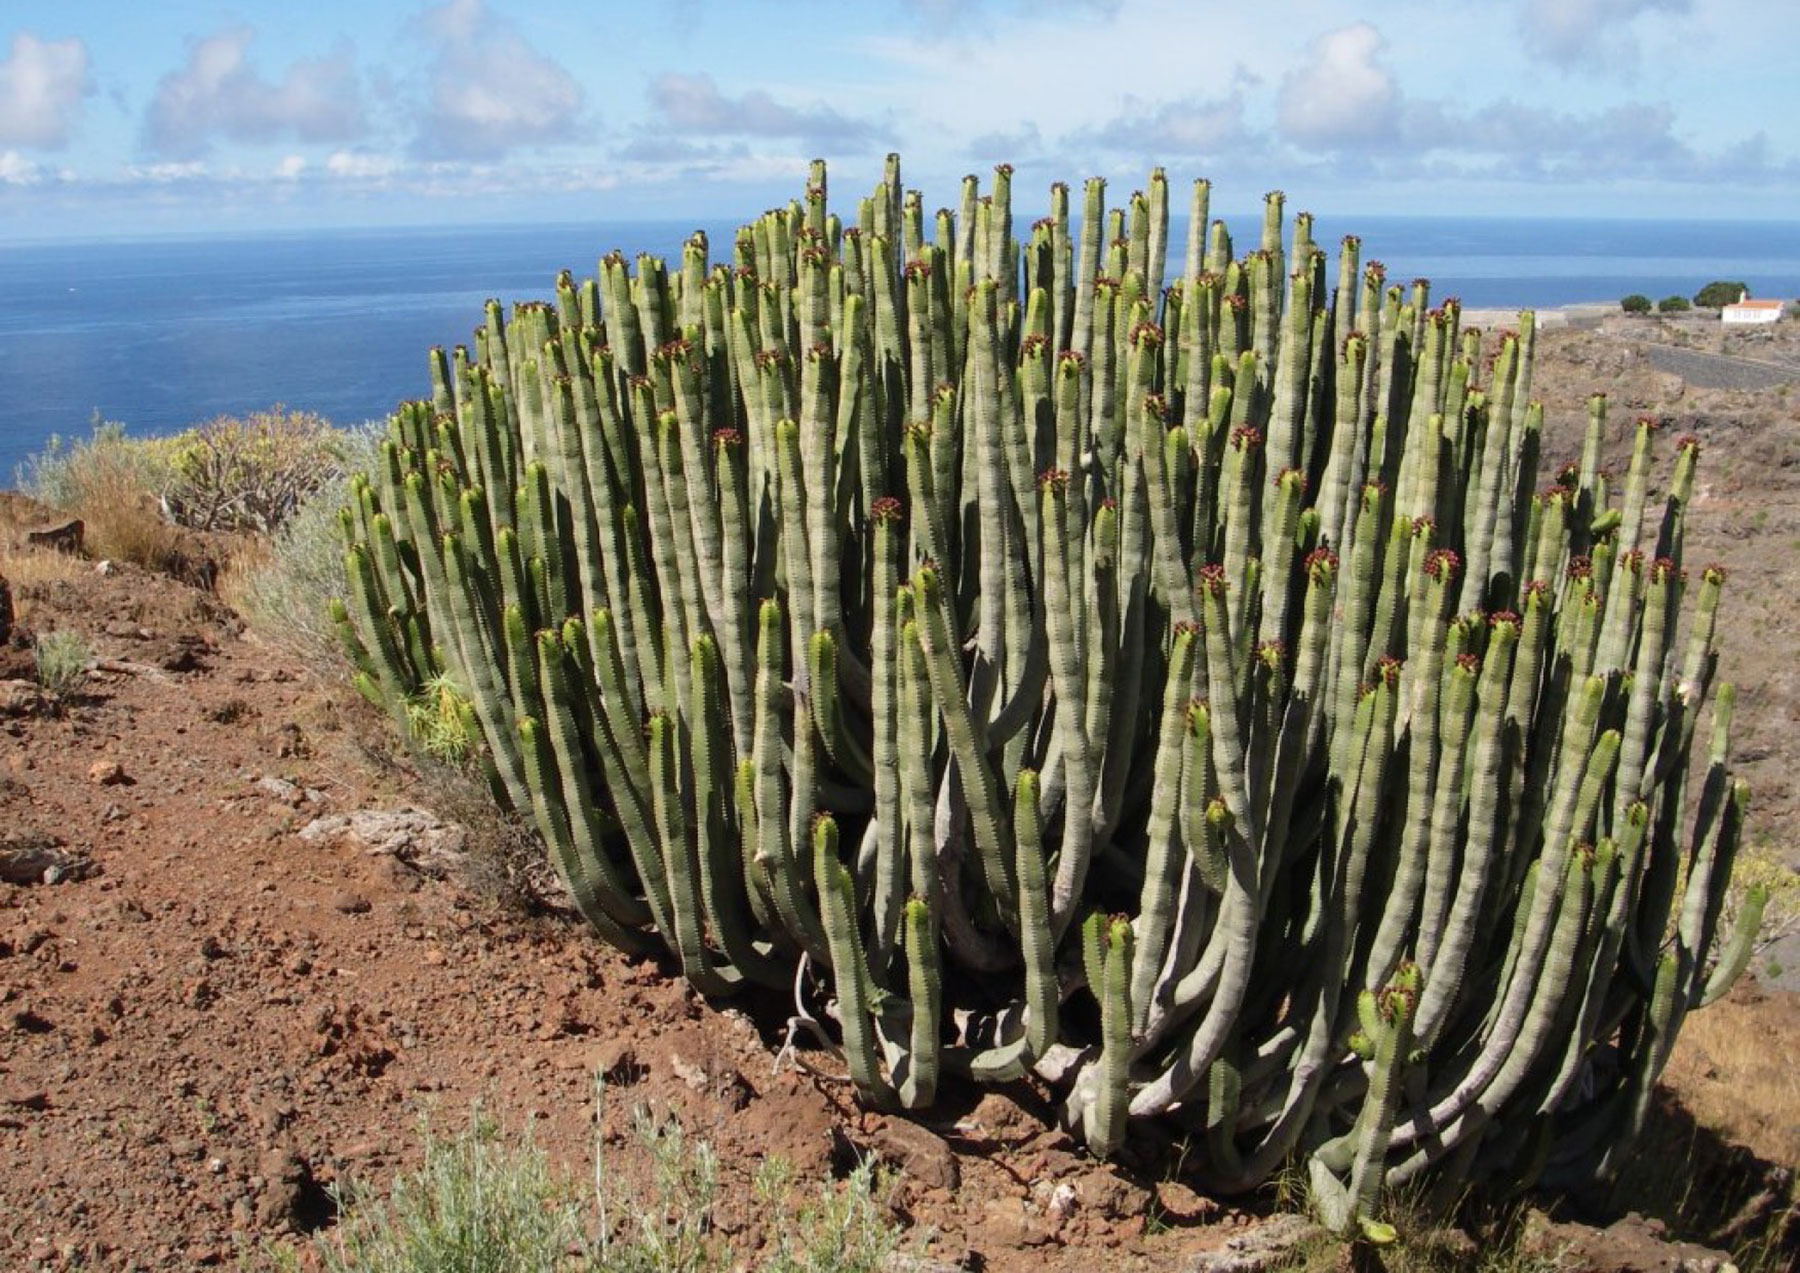 Este cactus típico de Tenerife es la fuente de inspiracion para crear el símbolo en el restyling de marca para las tiendas de calzado Pecas